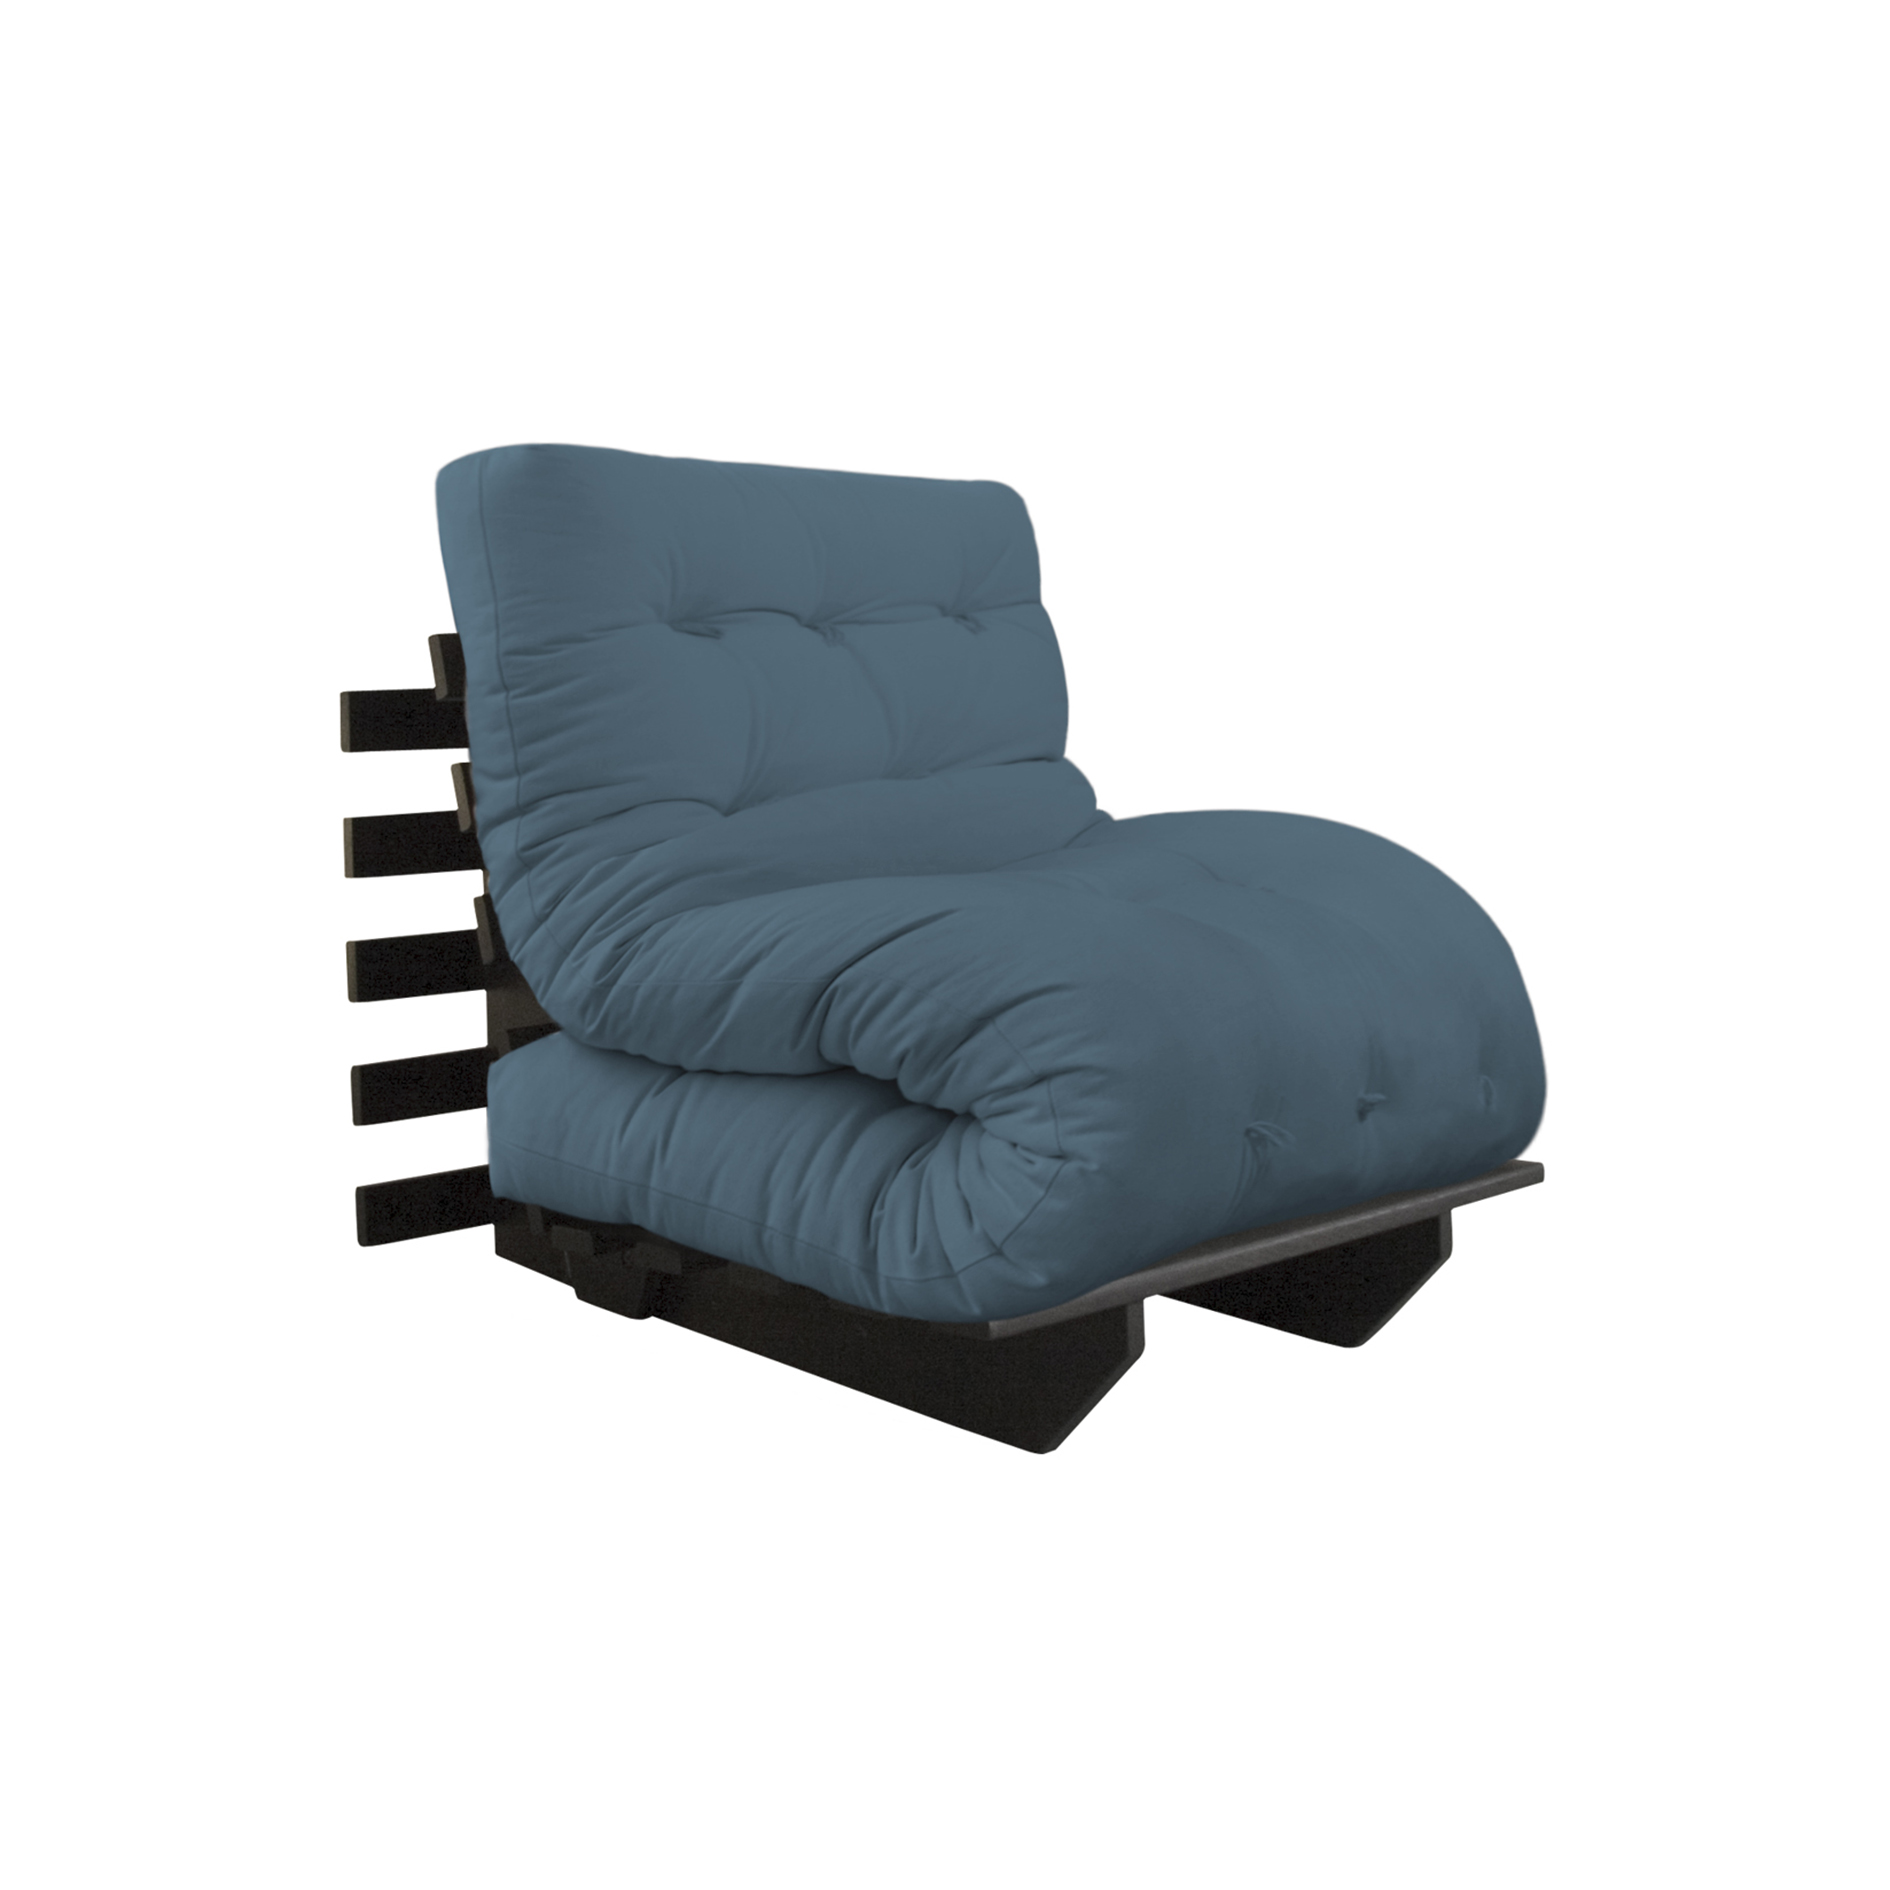 Poltrona-cama Relax 80, com futon revestido em lonita, de R$ 3249 por R$ 2159